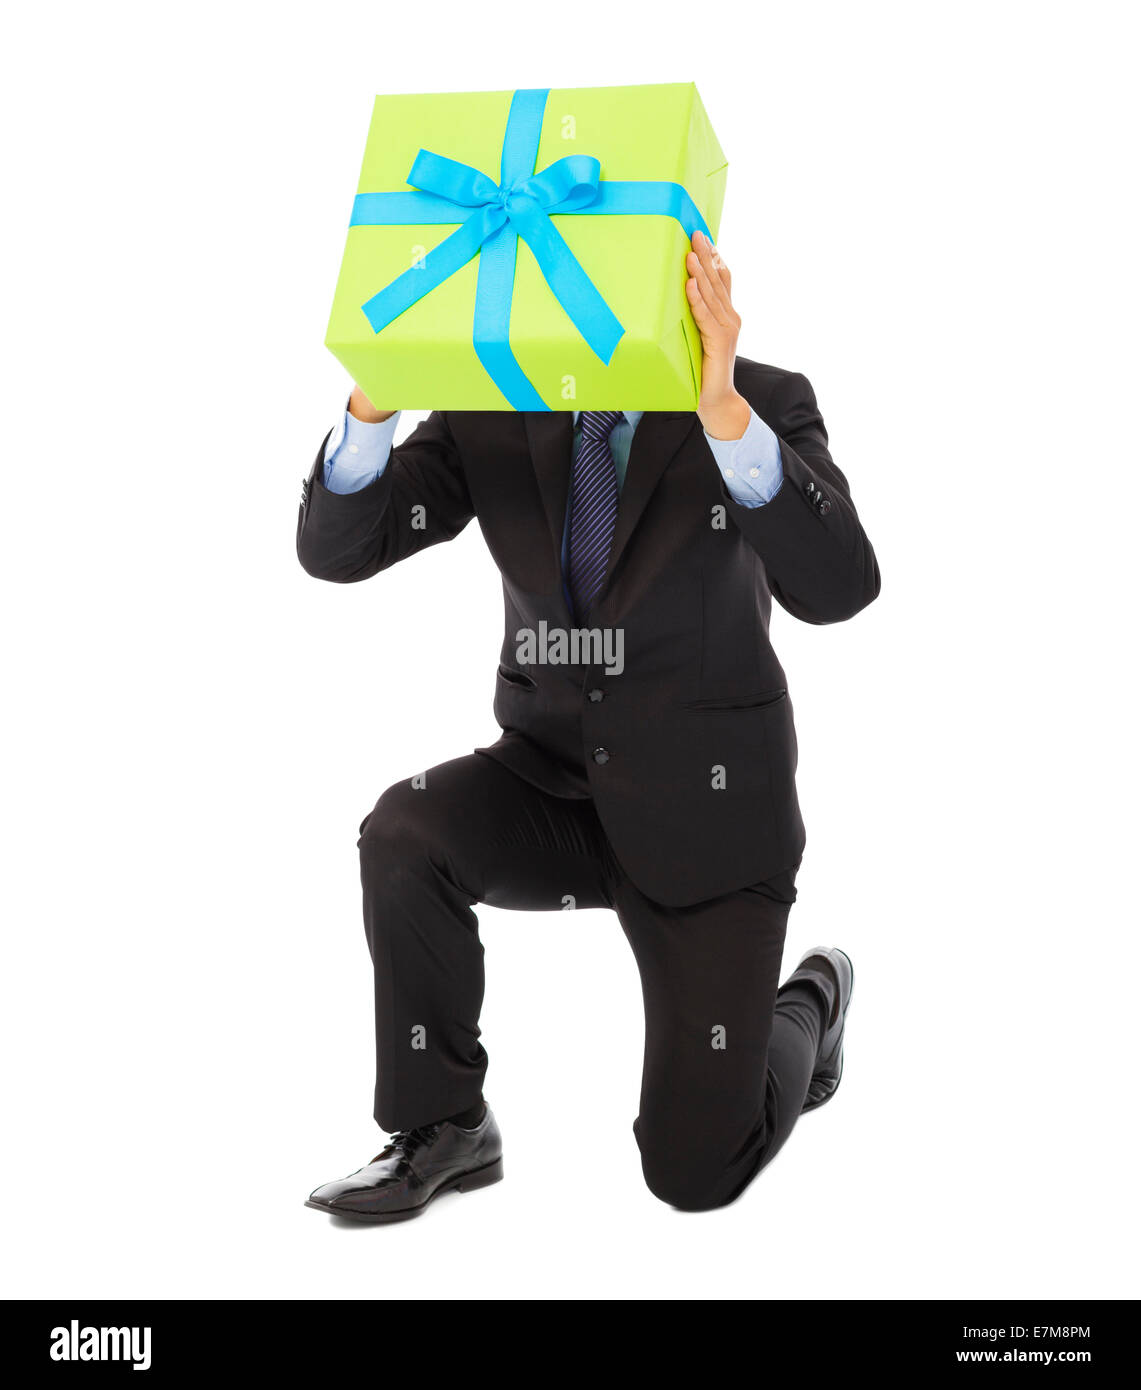 Geschäftsmann hält ein Geschenk box und kniet nieder. isoliert auf weißem  Hintergrund Stockfotografie - Alamy